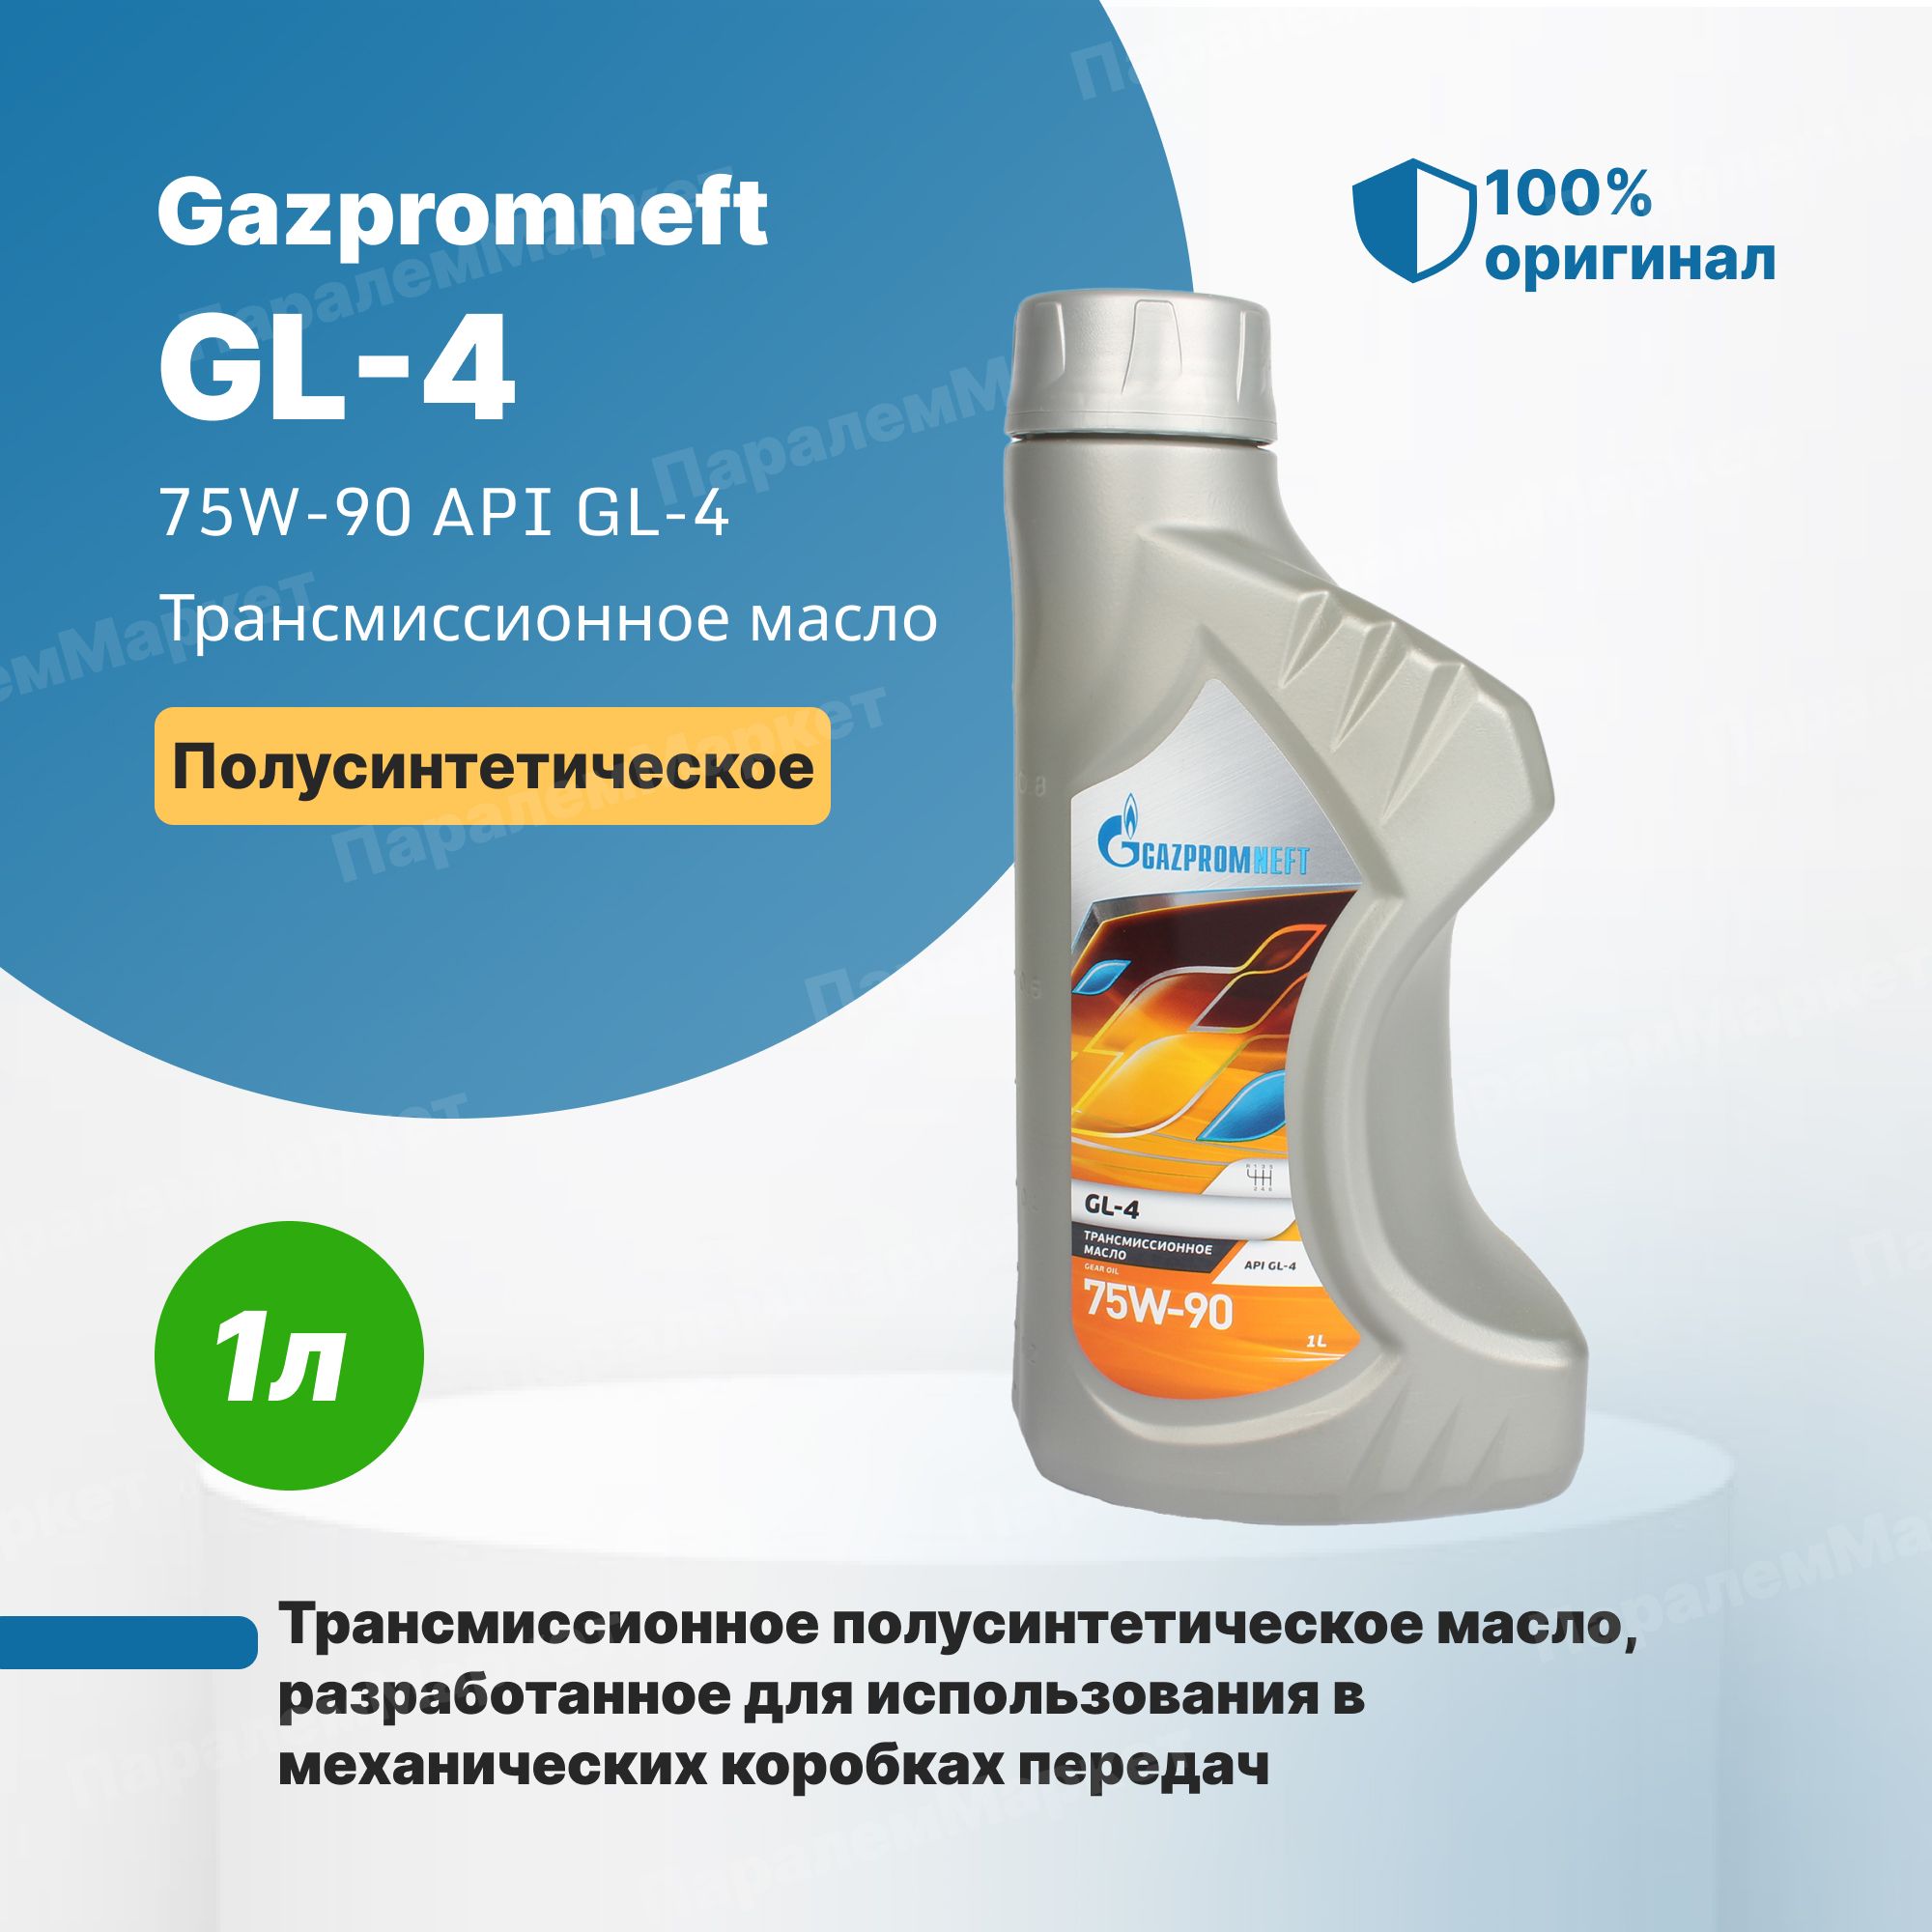 Газпромнефть артикул. Gazpromneft Standard 20w-50. Gazpromneft ATF DX II 1 Л. Трансмиссионное масло Gazpromneft ATF DX II 1л. Моторное масло 20w50 Газпромнефть.